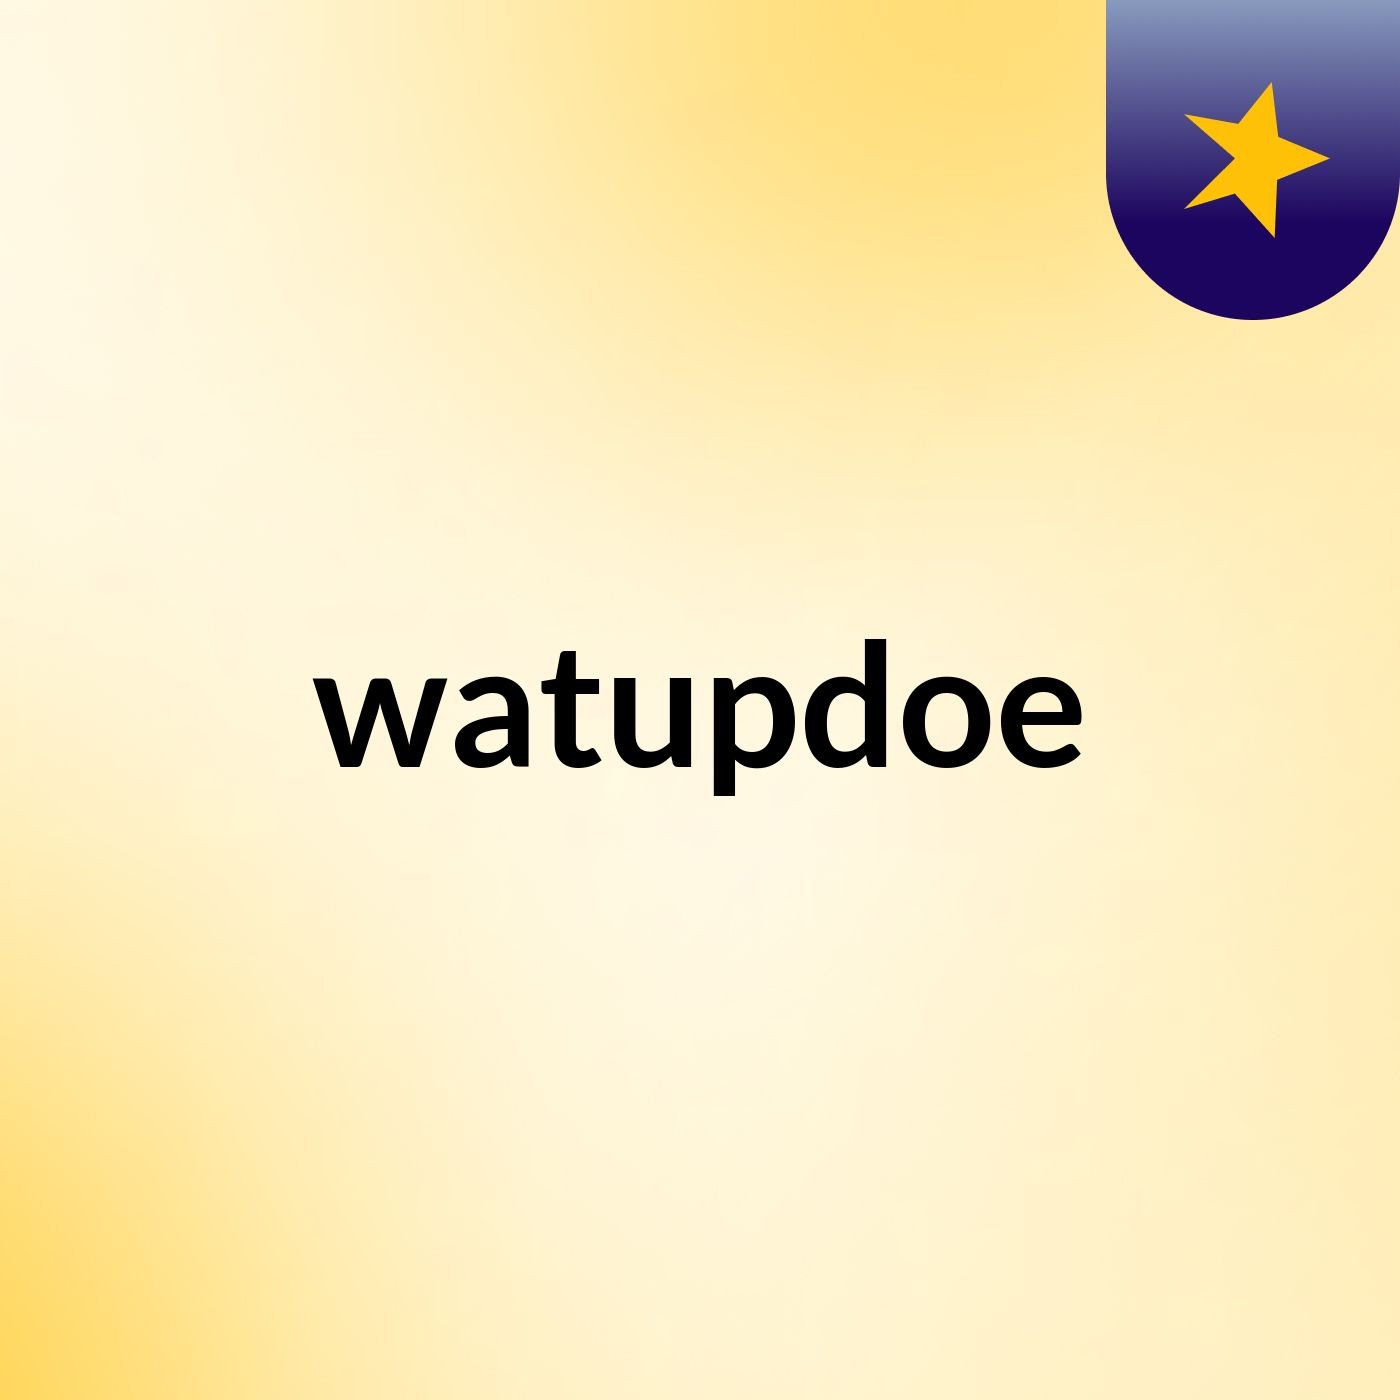 watupdoe